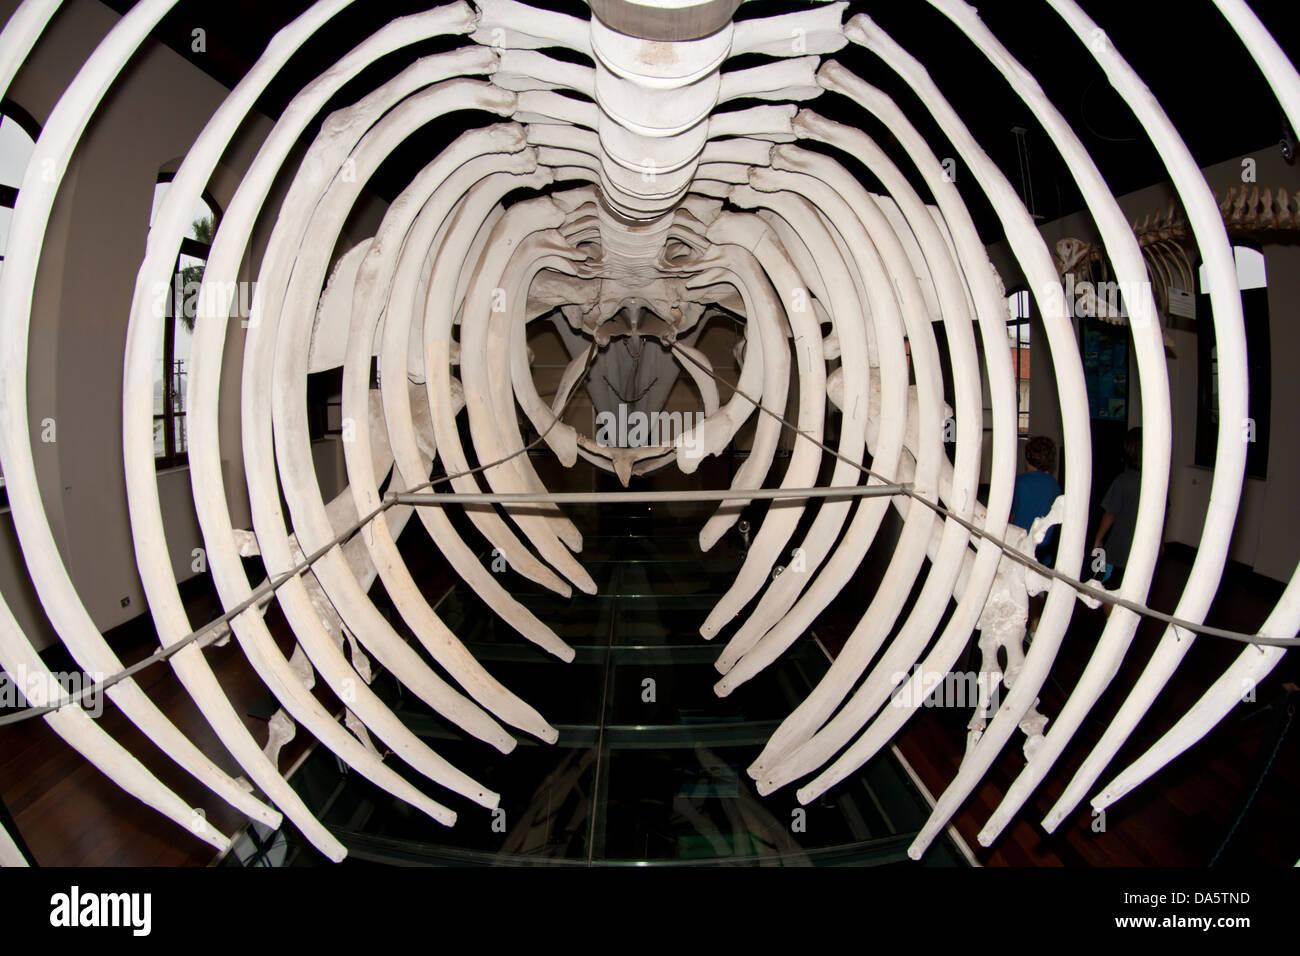 Exposition d'un squelette de rorqual commun au "Musée de la pêche" (Museu de pesca) à Santos, Sao Paulo, Brésil. Banque D'Images